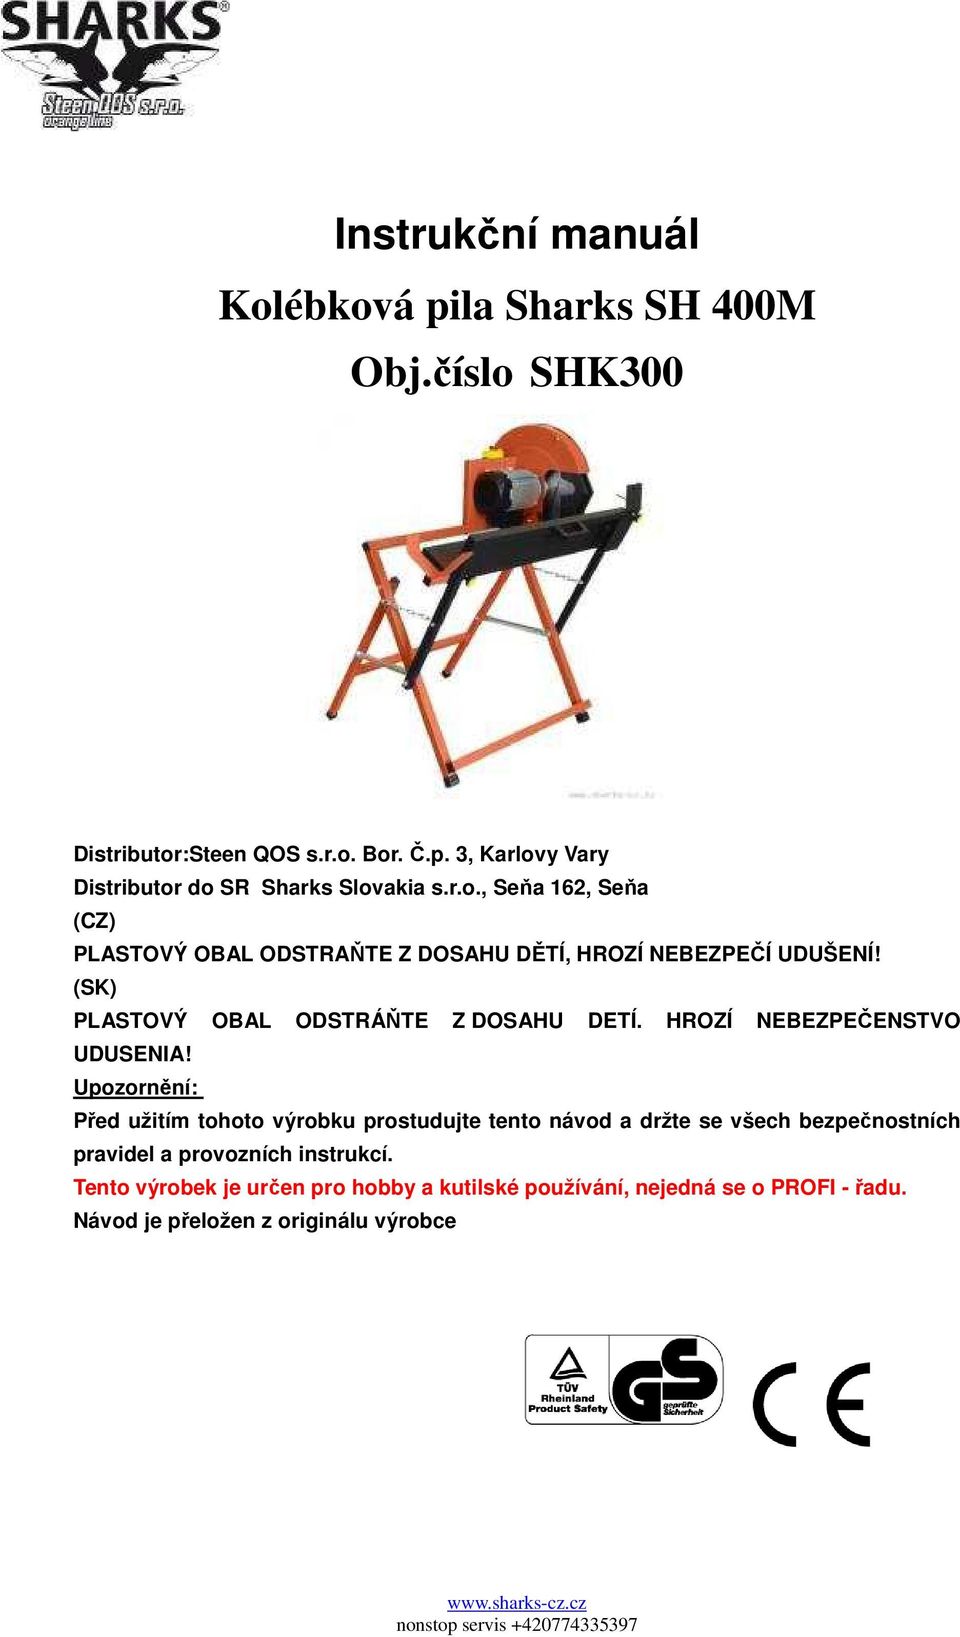 Instrukční manuál Kolébková pila Sharks SH 400M Obj.číslo SHK300 - PDF  Stažení zdarma